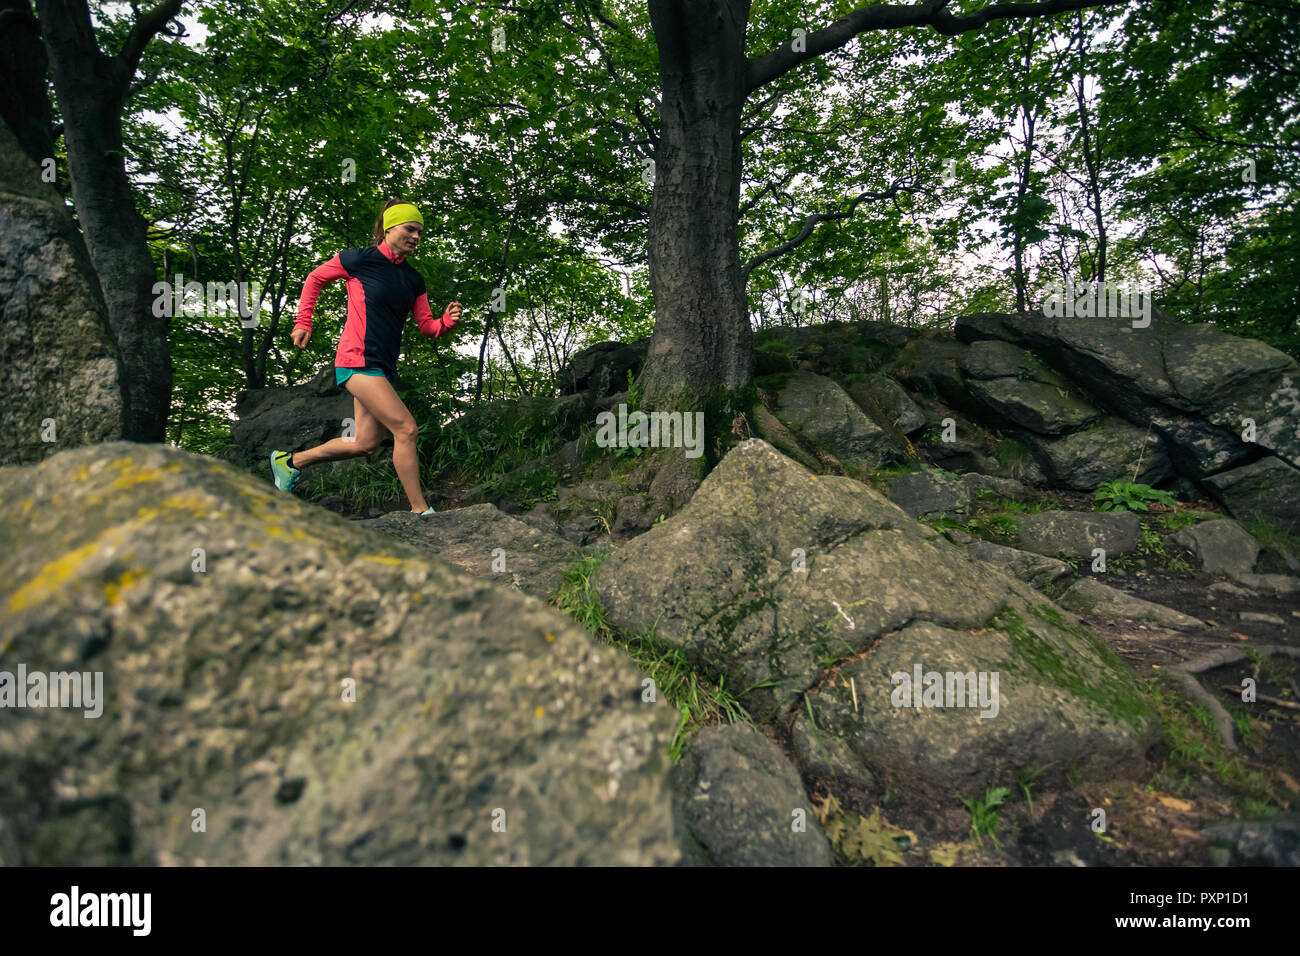 Le trail running girl in green forest. La formation de sport d'endurance. Femme trail runner course cross-country. Concept Sport et fitness en plein air dans la nature. Banque D'Images